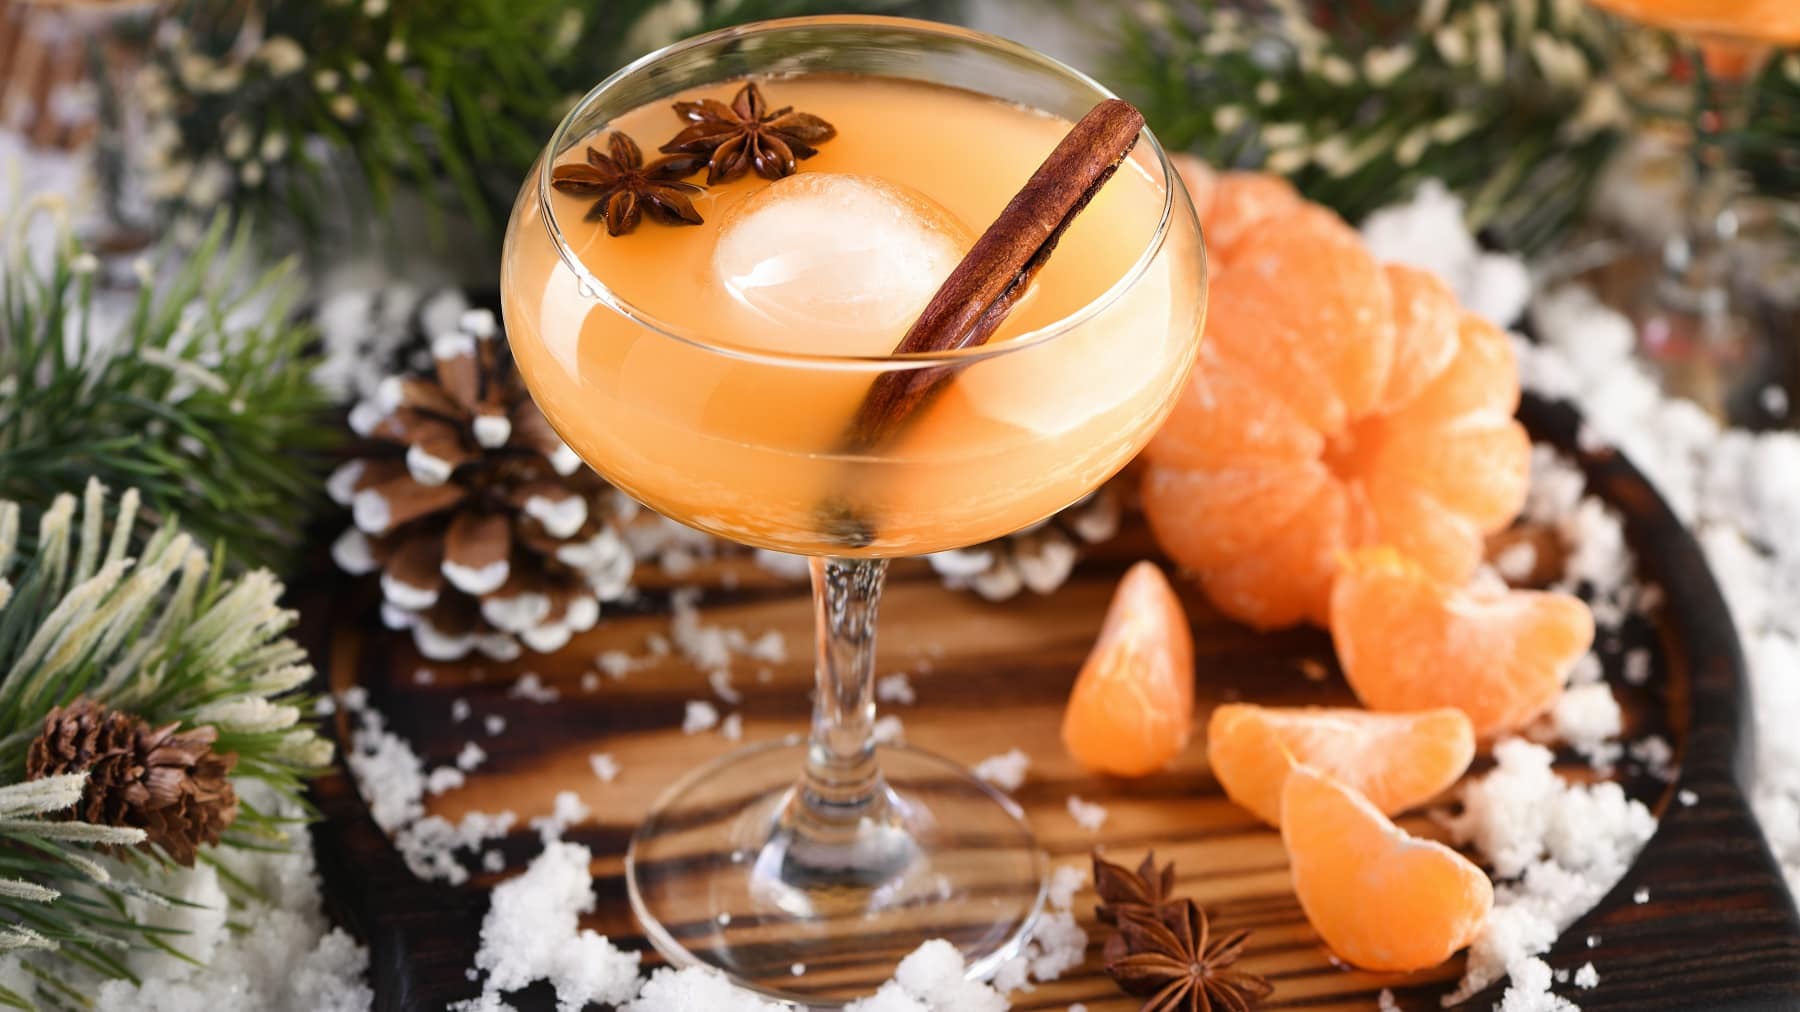 Ein Glas mit dem Mandarinen Negroni auf einem dunklen Holztisch mit allerlei weihnachtlicher Dekoration.